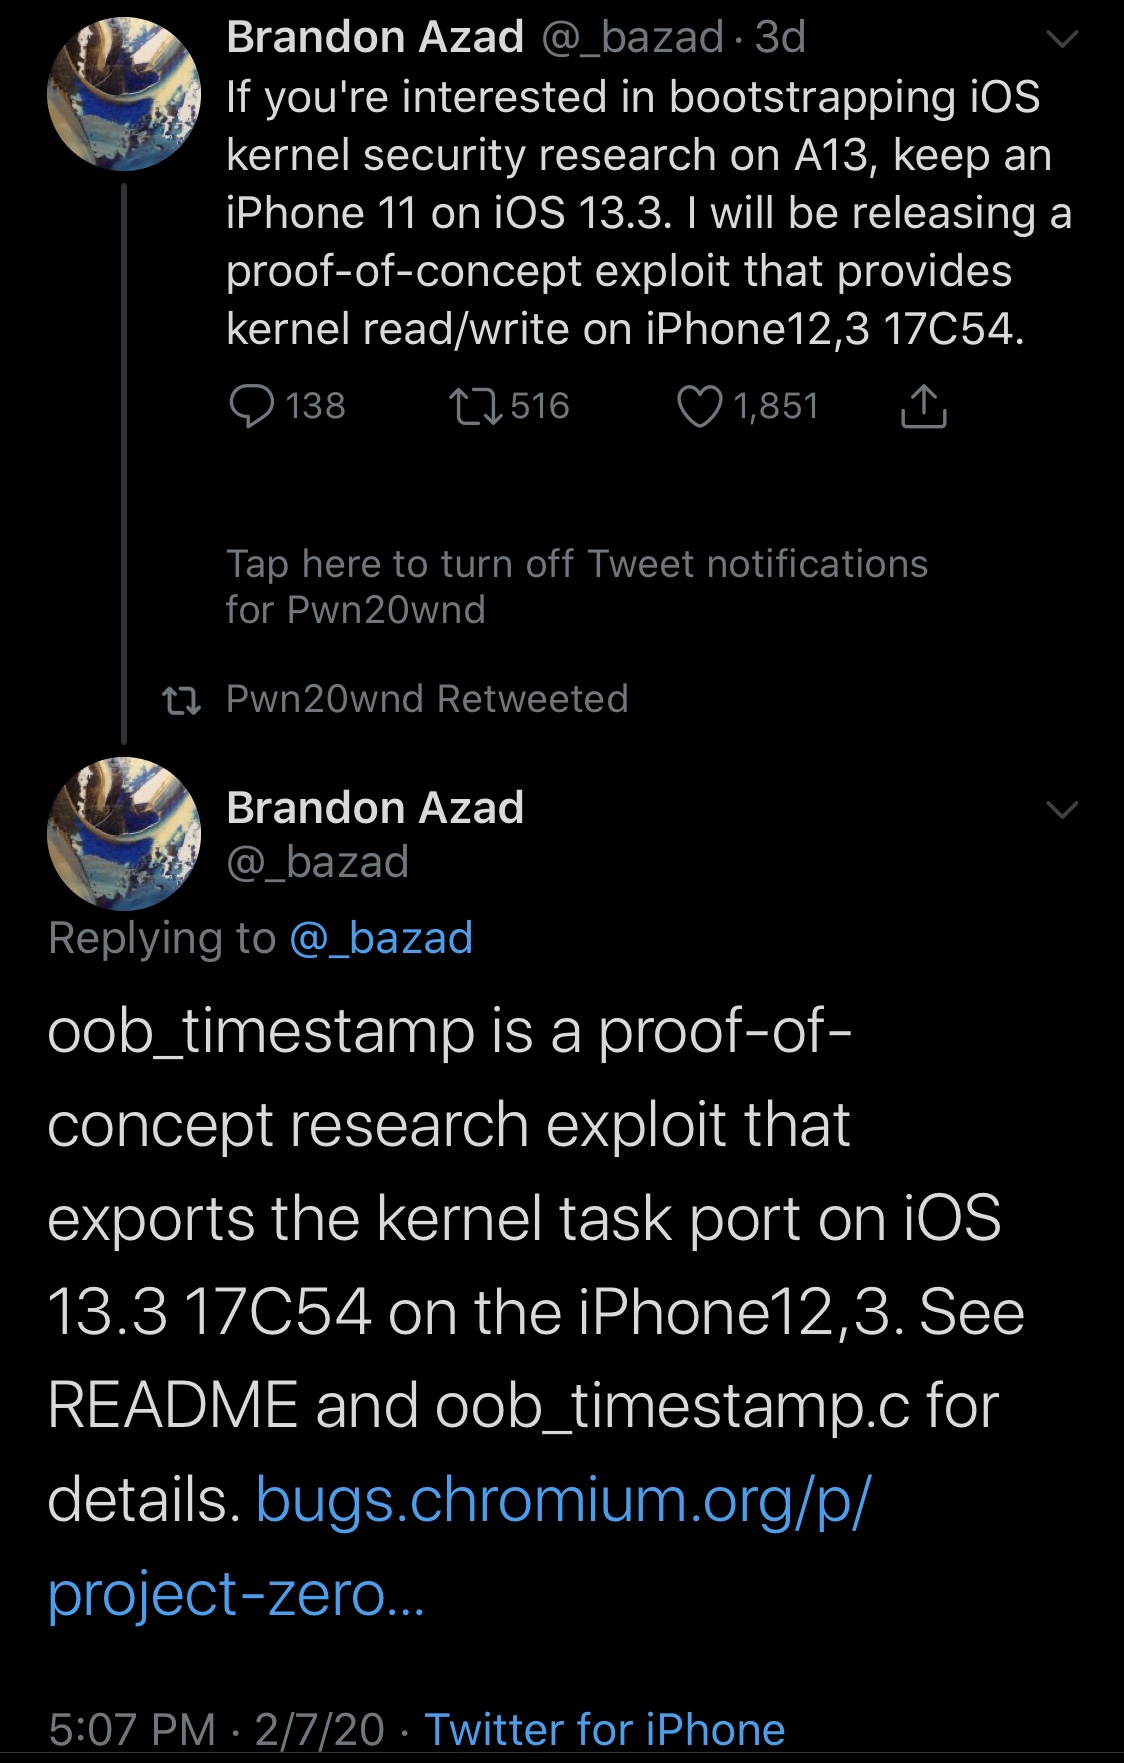 Brandon Azad släppte officiellt OOB Timestamp exploit för iOS 13.0-13.3 3